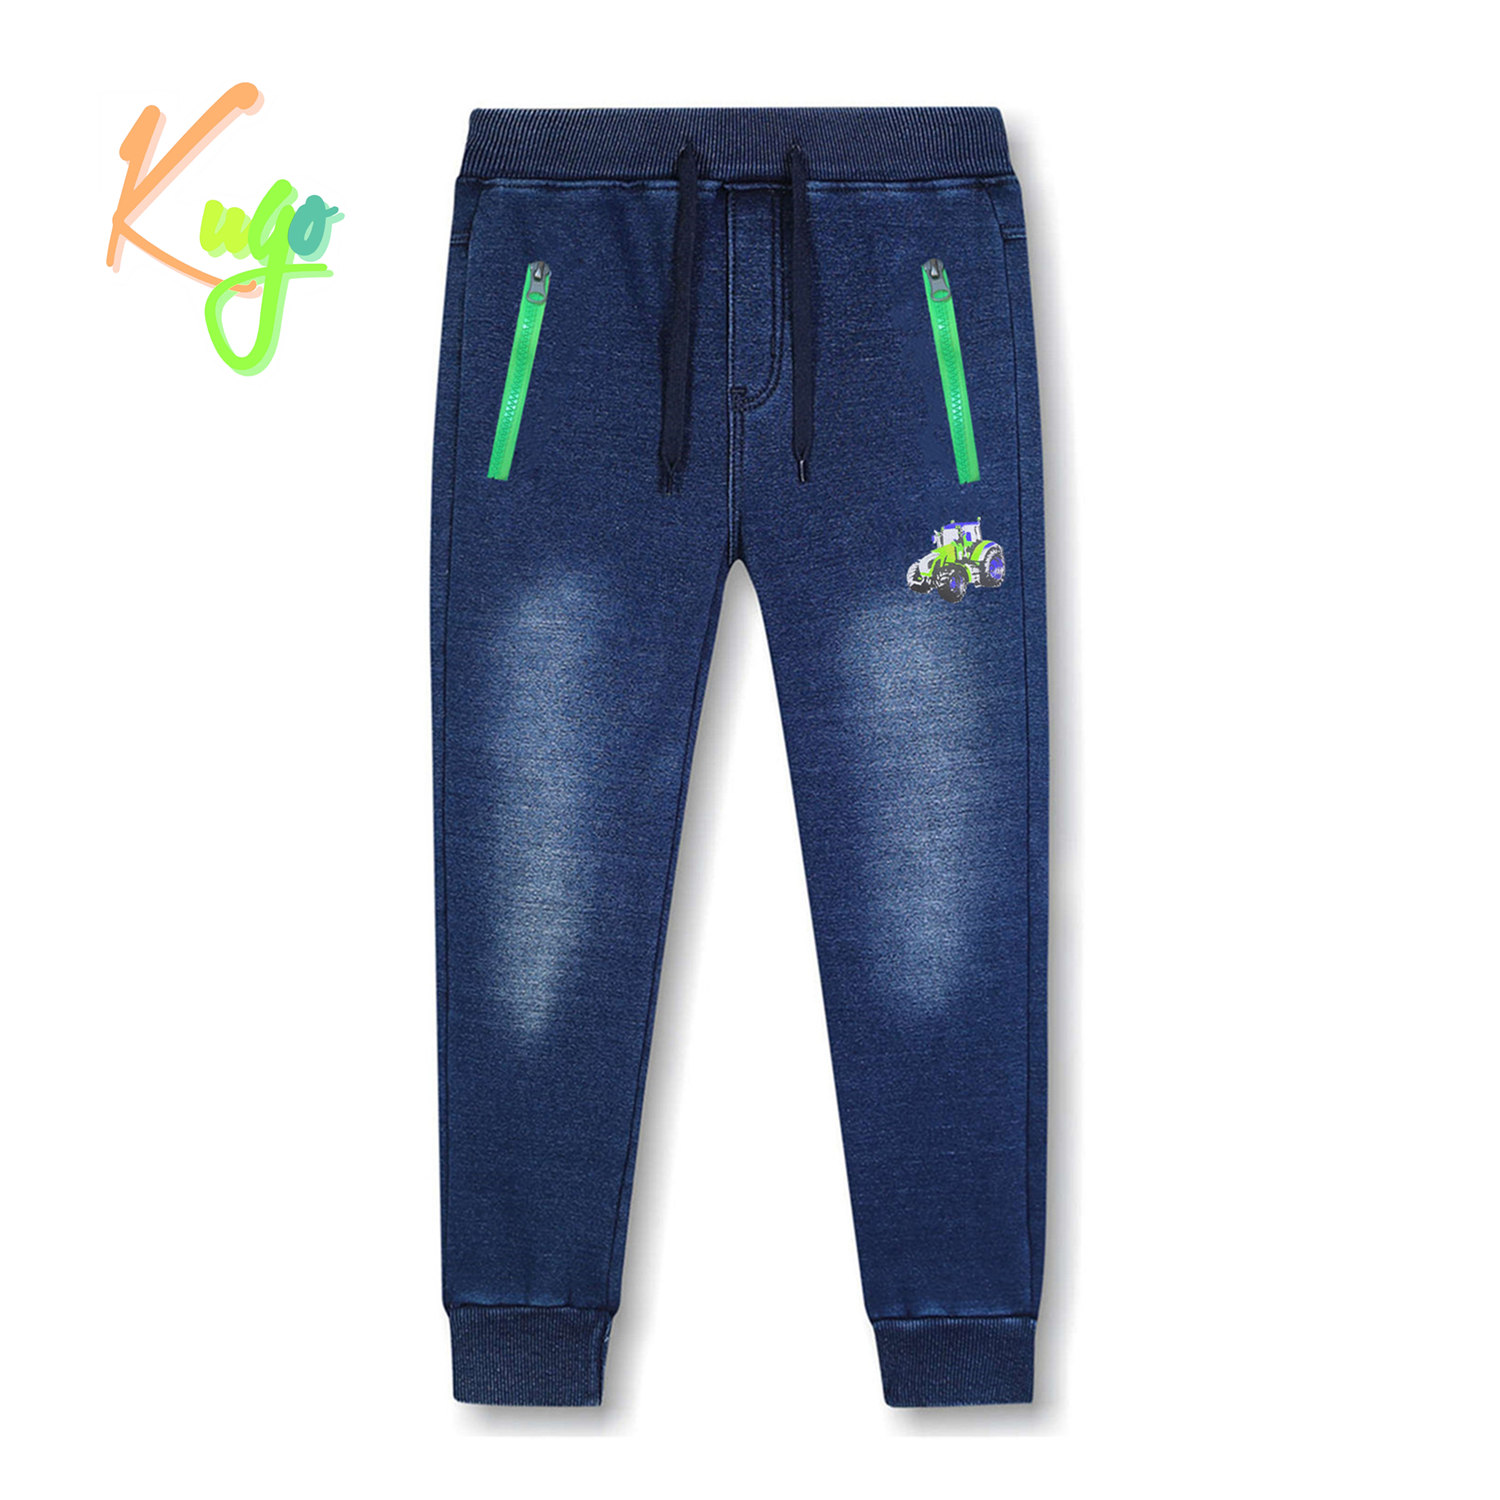 Chlapecké riflové kalhoty/ tepláky, zateplené - KUGO CK0923, modrá Barva: Modrá, Velikost: 98